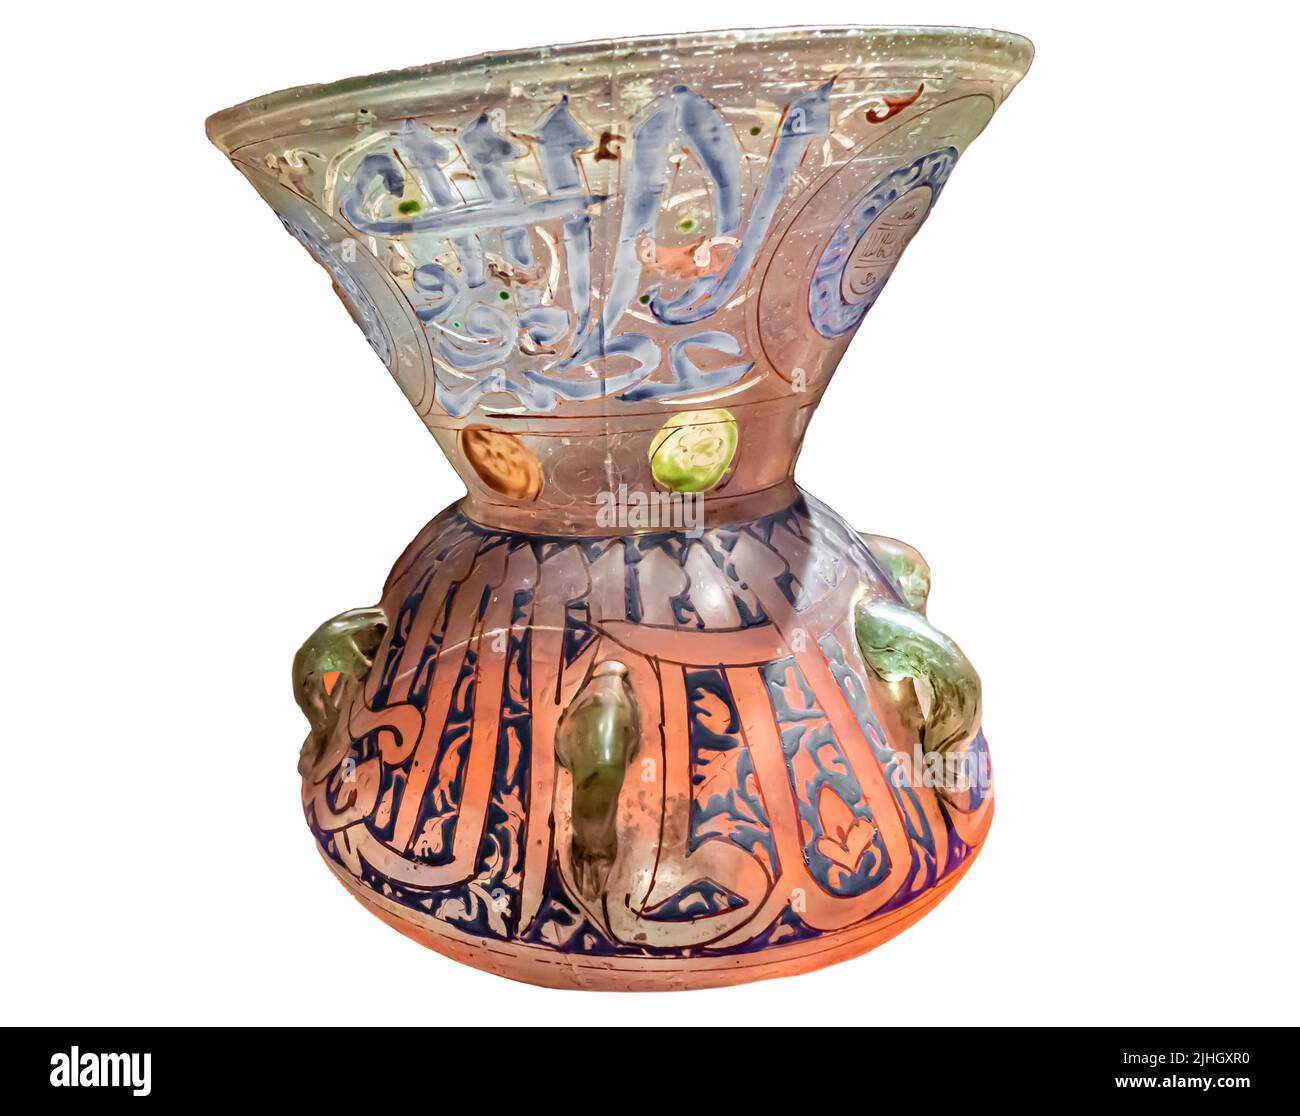 Lampe mit dem Namen Sultan Al-Malik al-Muzaffar Hajji - Glas, Emaille - Ägypten - 1346-1347 Stockfoto